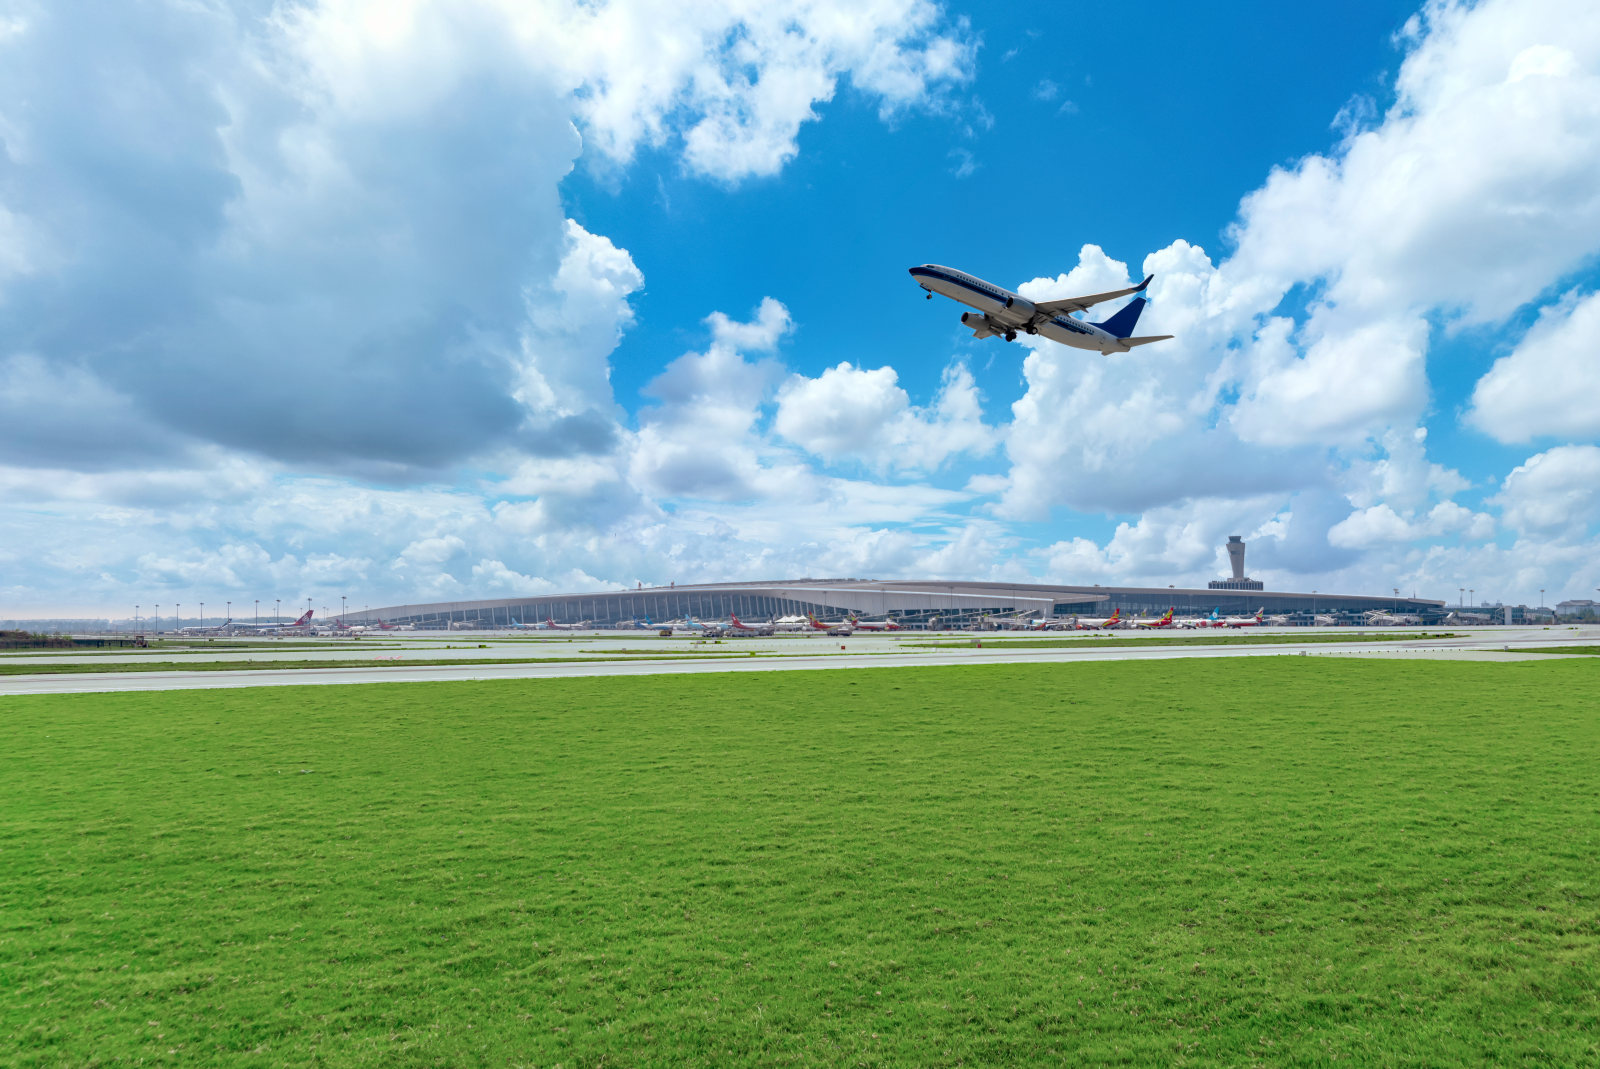 中国河南省郑州市新郑国际机场正在起飞的飞机跑道草坪机场全景摄影